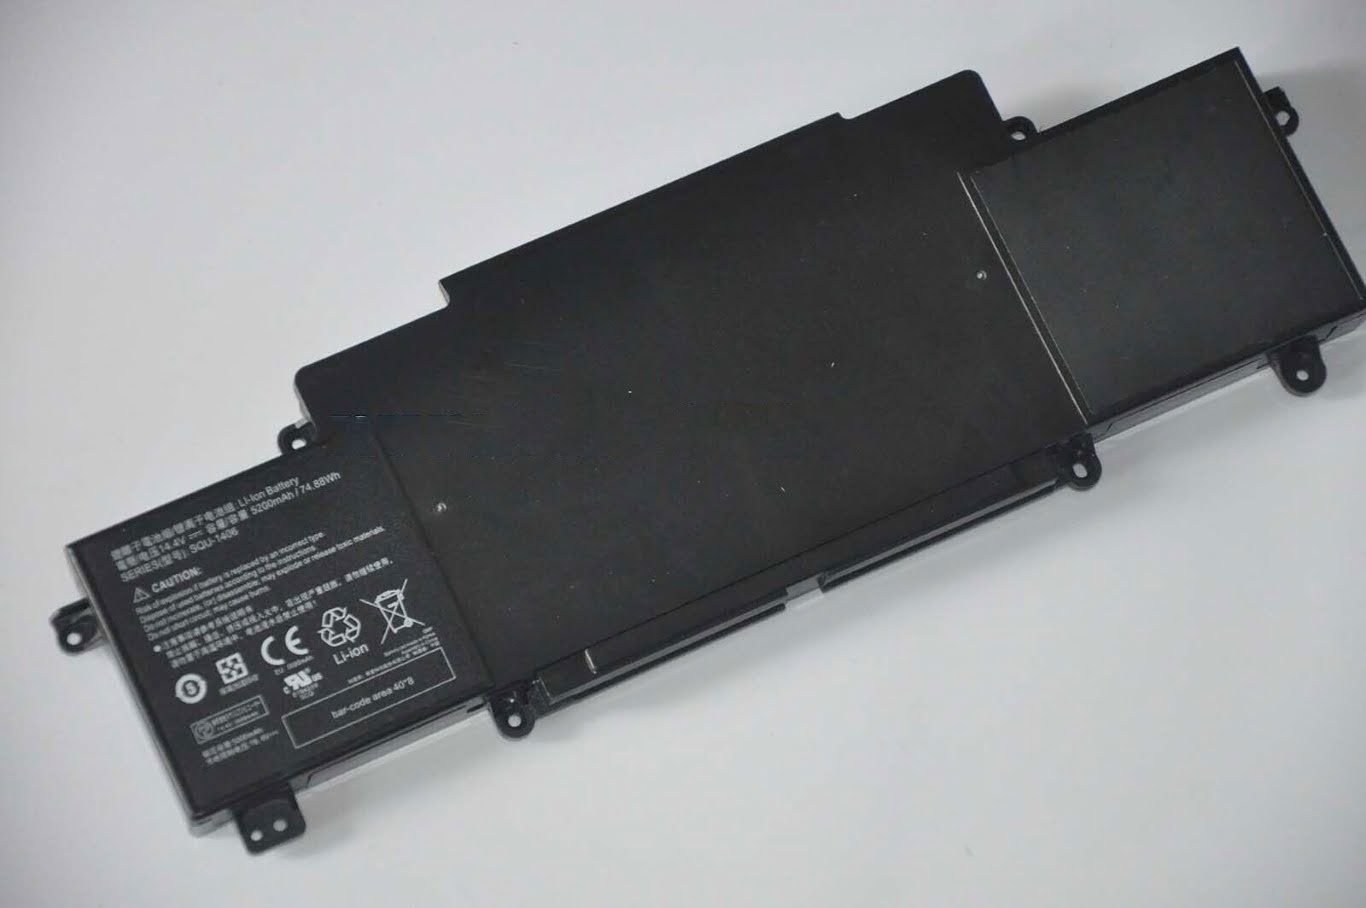 SQU-1406 replacement Laptop Battery for Thunderobot 911(Turbo), 911-E1, 5300mah / 74.88wh, 14.4V